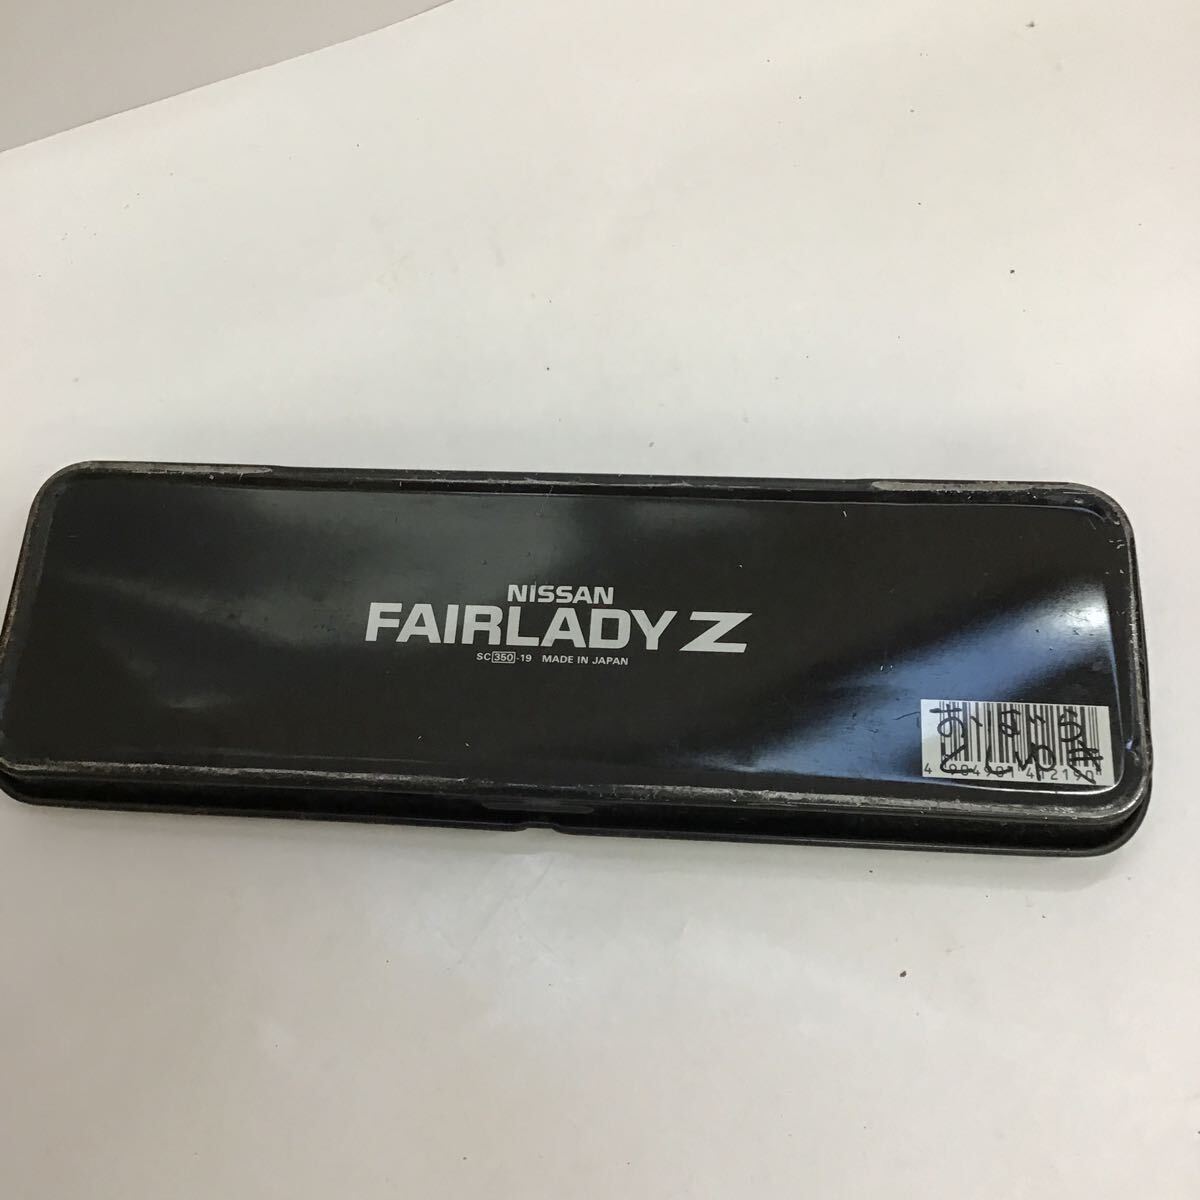  ручка   кейс   Firelady Z  в настоящее время  вещь   металлический   ретро   Nissan  Firelady Z【 подержанный товар 】